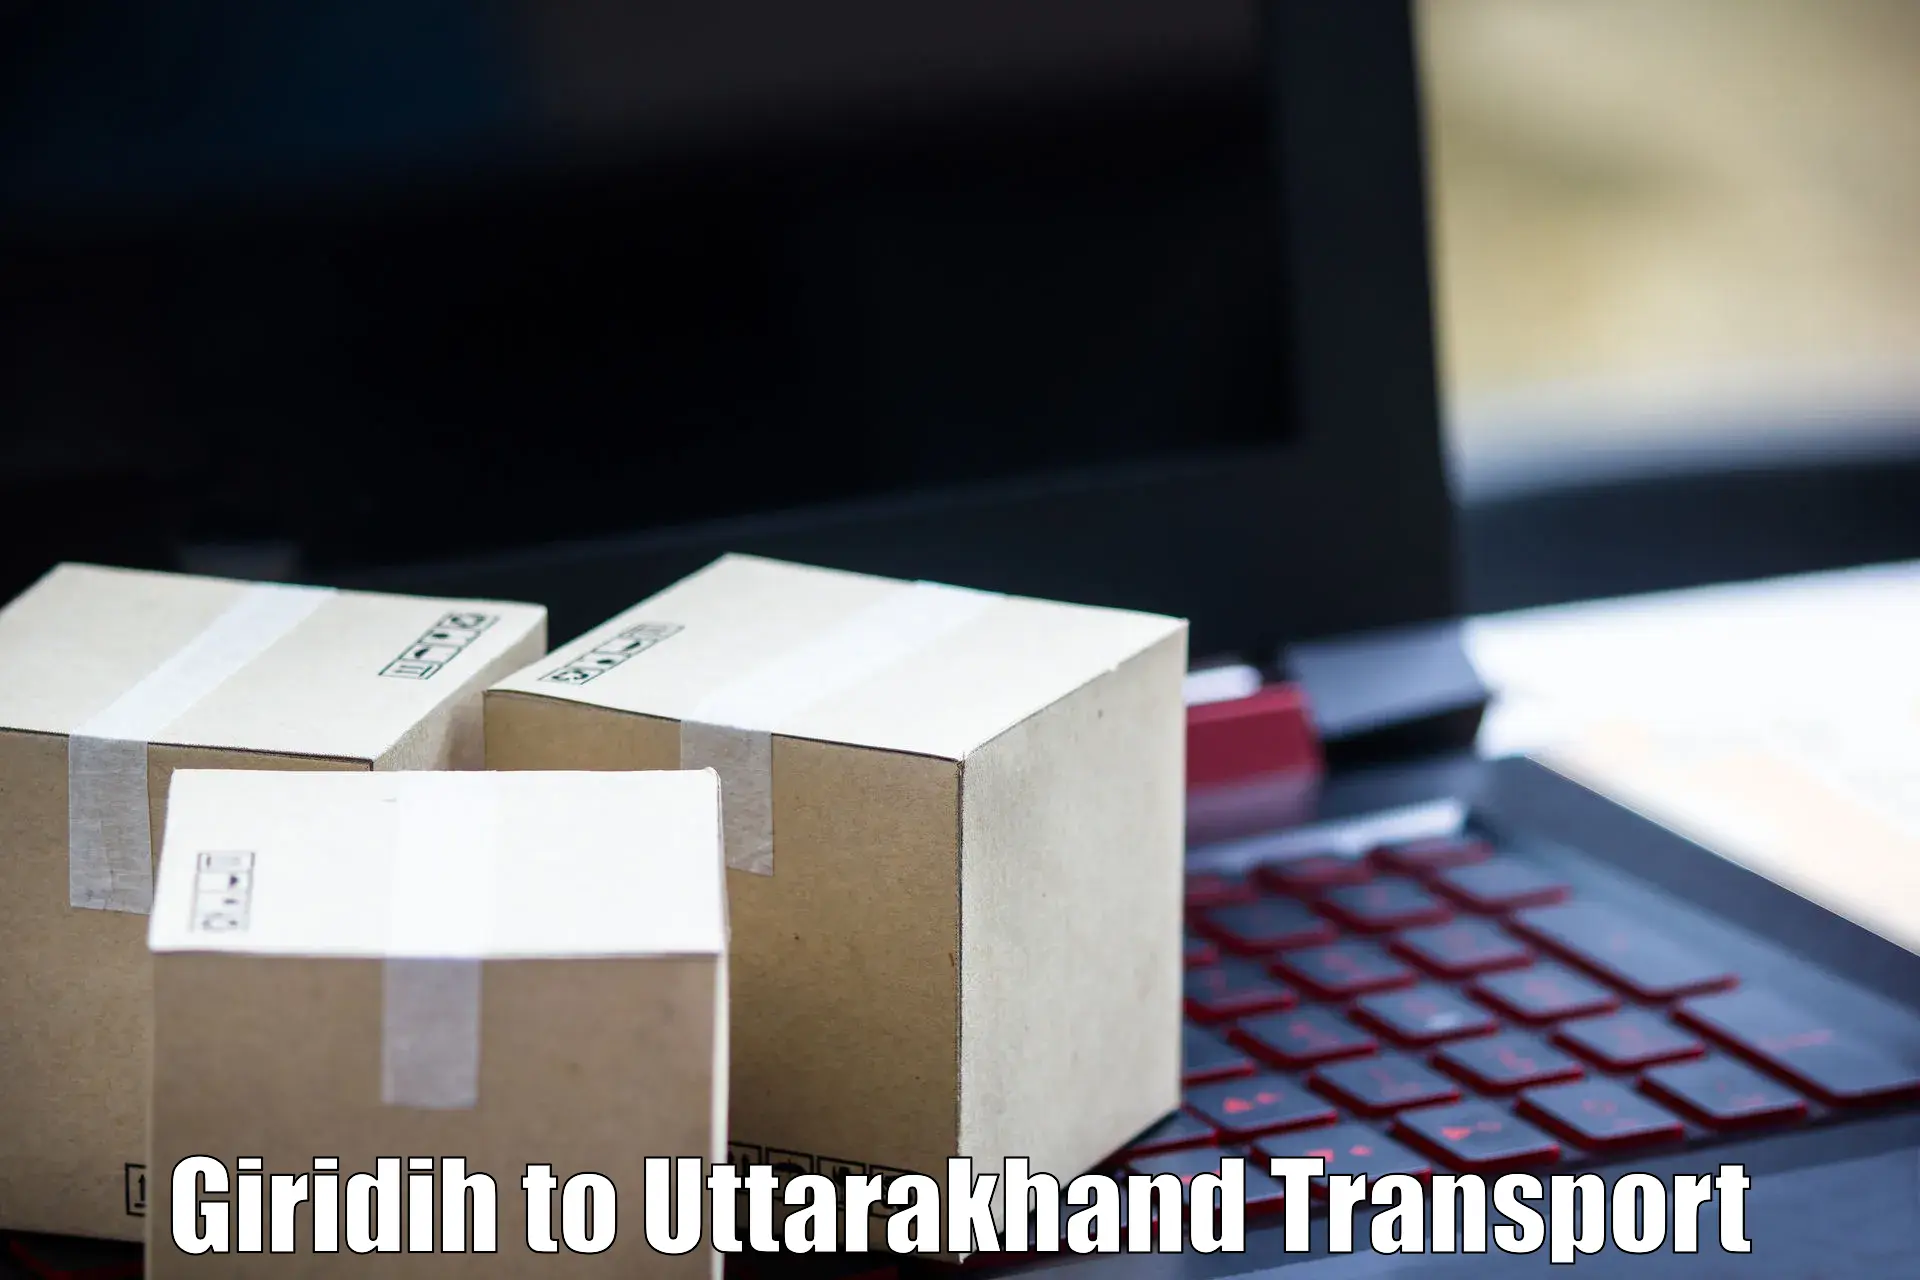 Road transport online services Giridih to IIT Roorkee